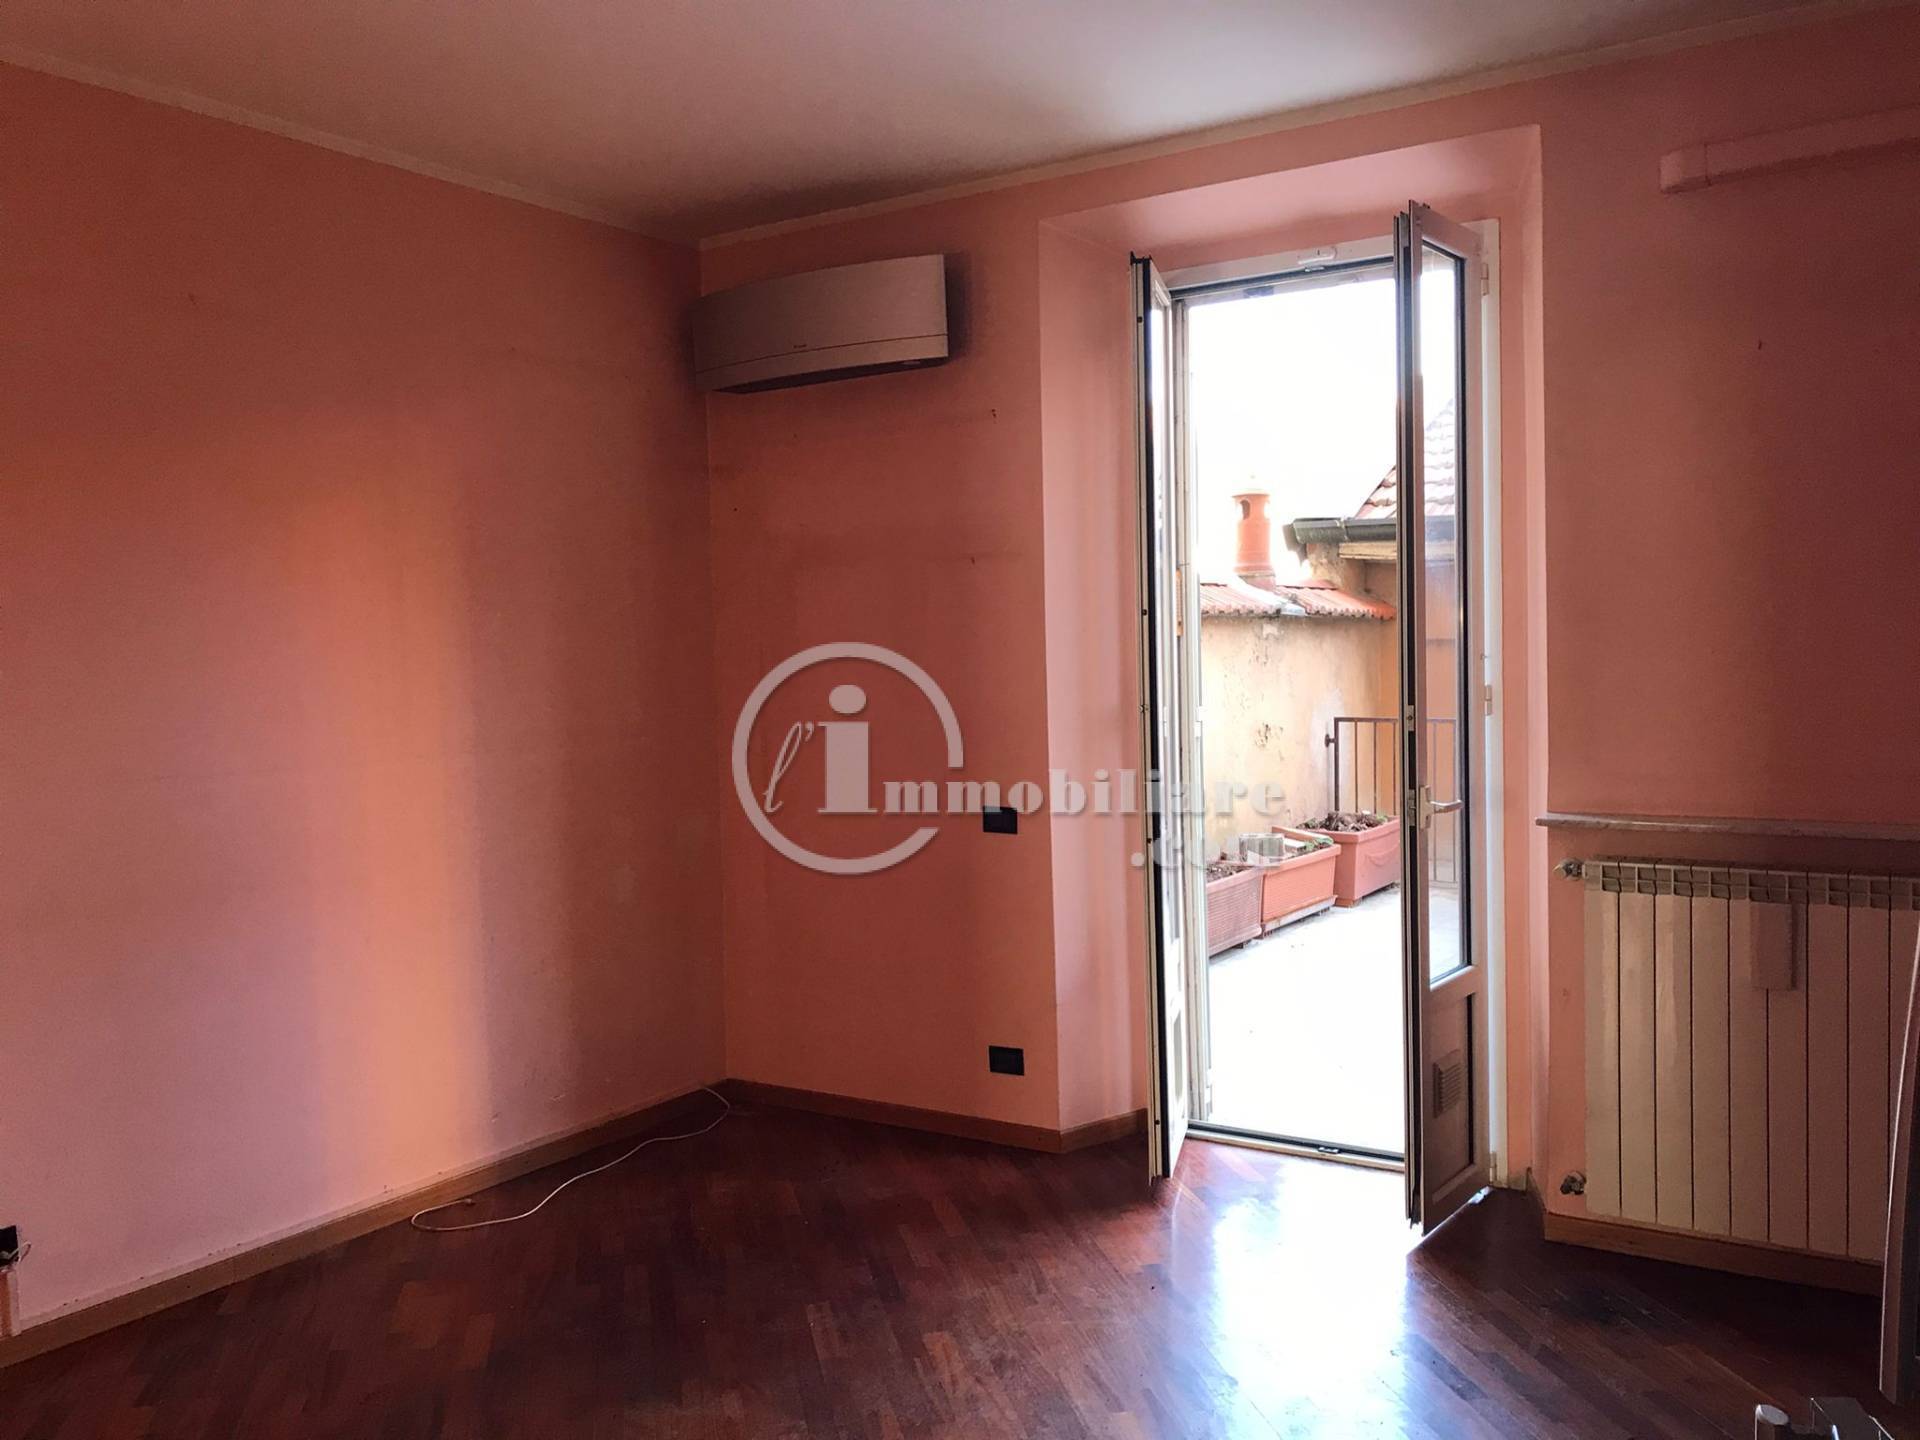 Appartamento in Vendita a Milano: 4 locali, 104 mq - Foto 22